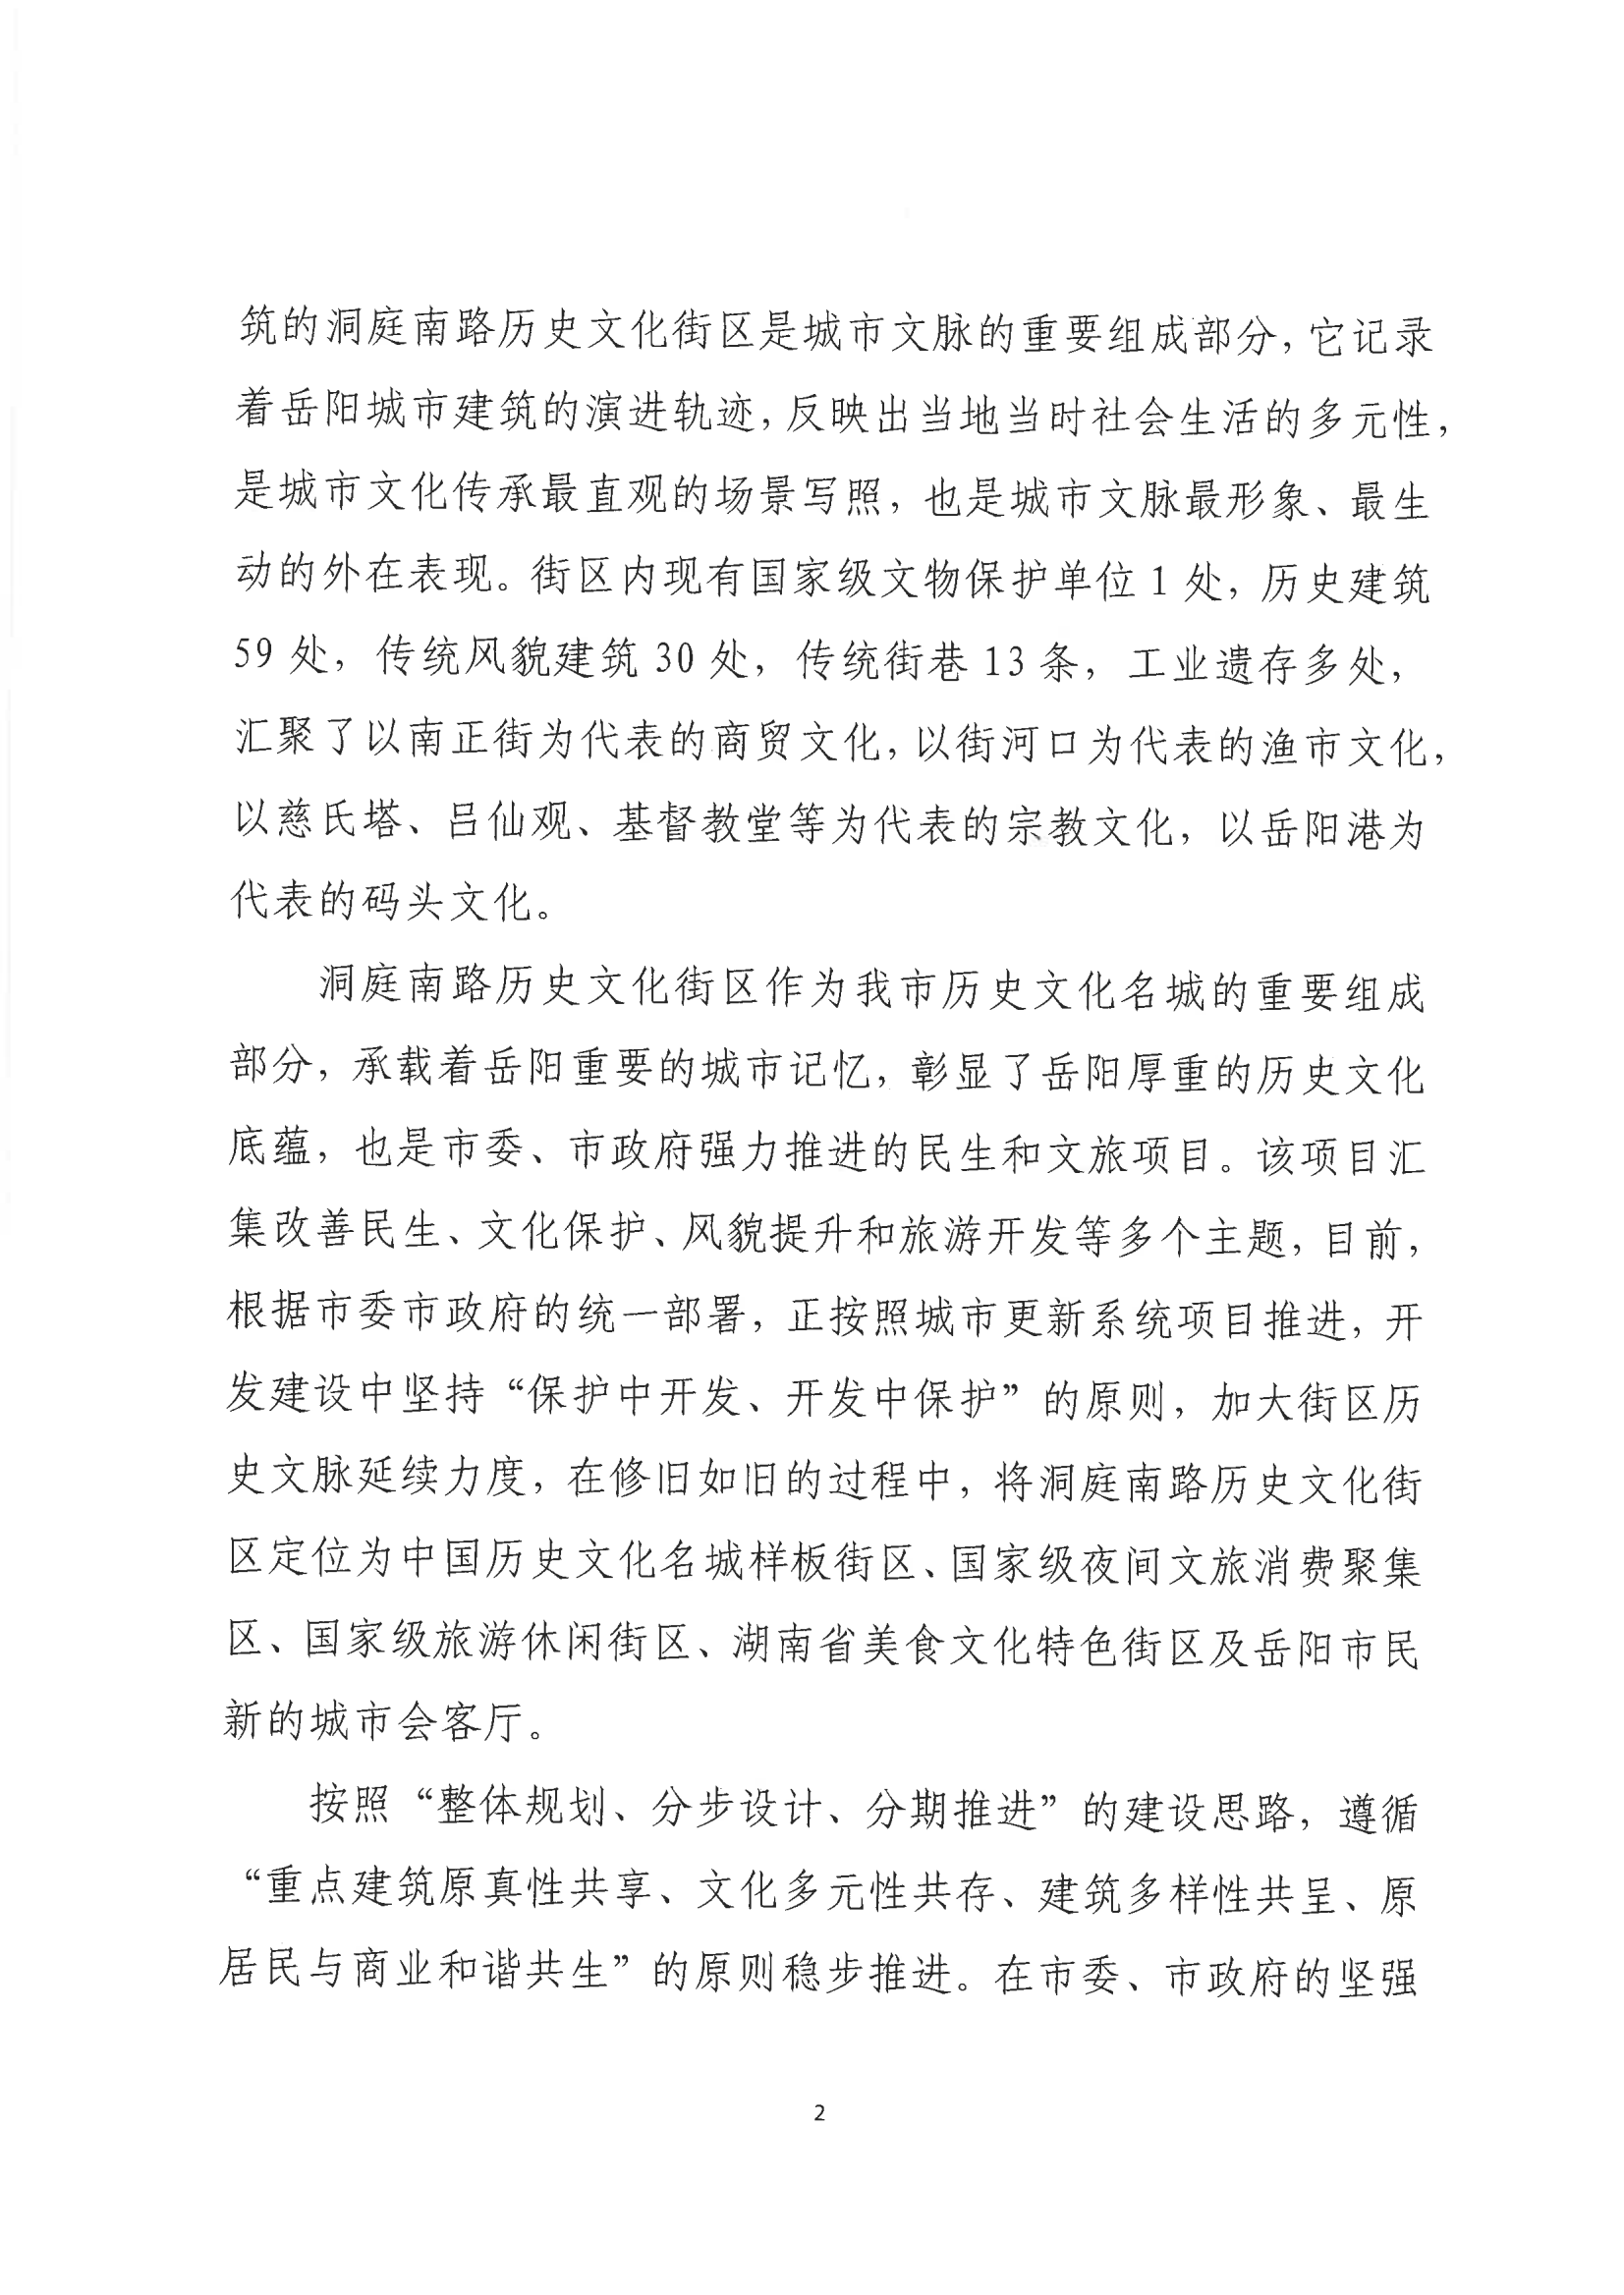 001号提案关于岳阳市政协九届一次会议第001号提案的回复(1)_01.png